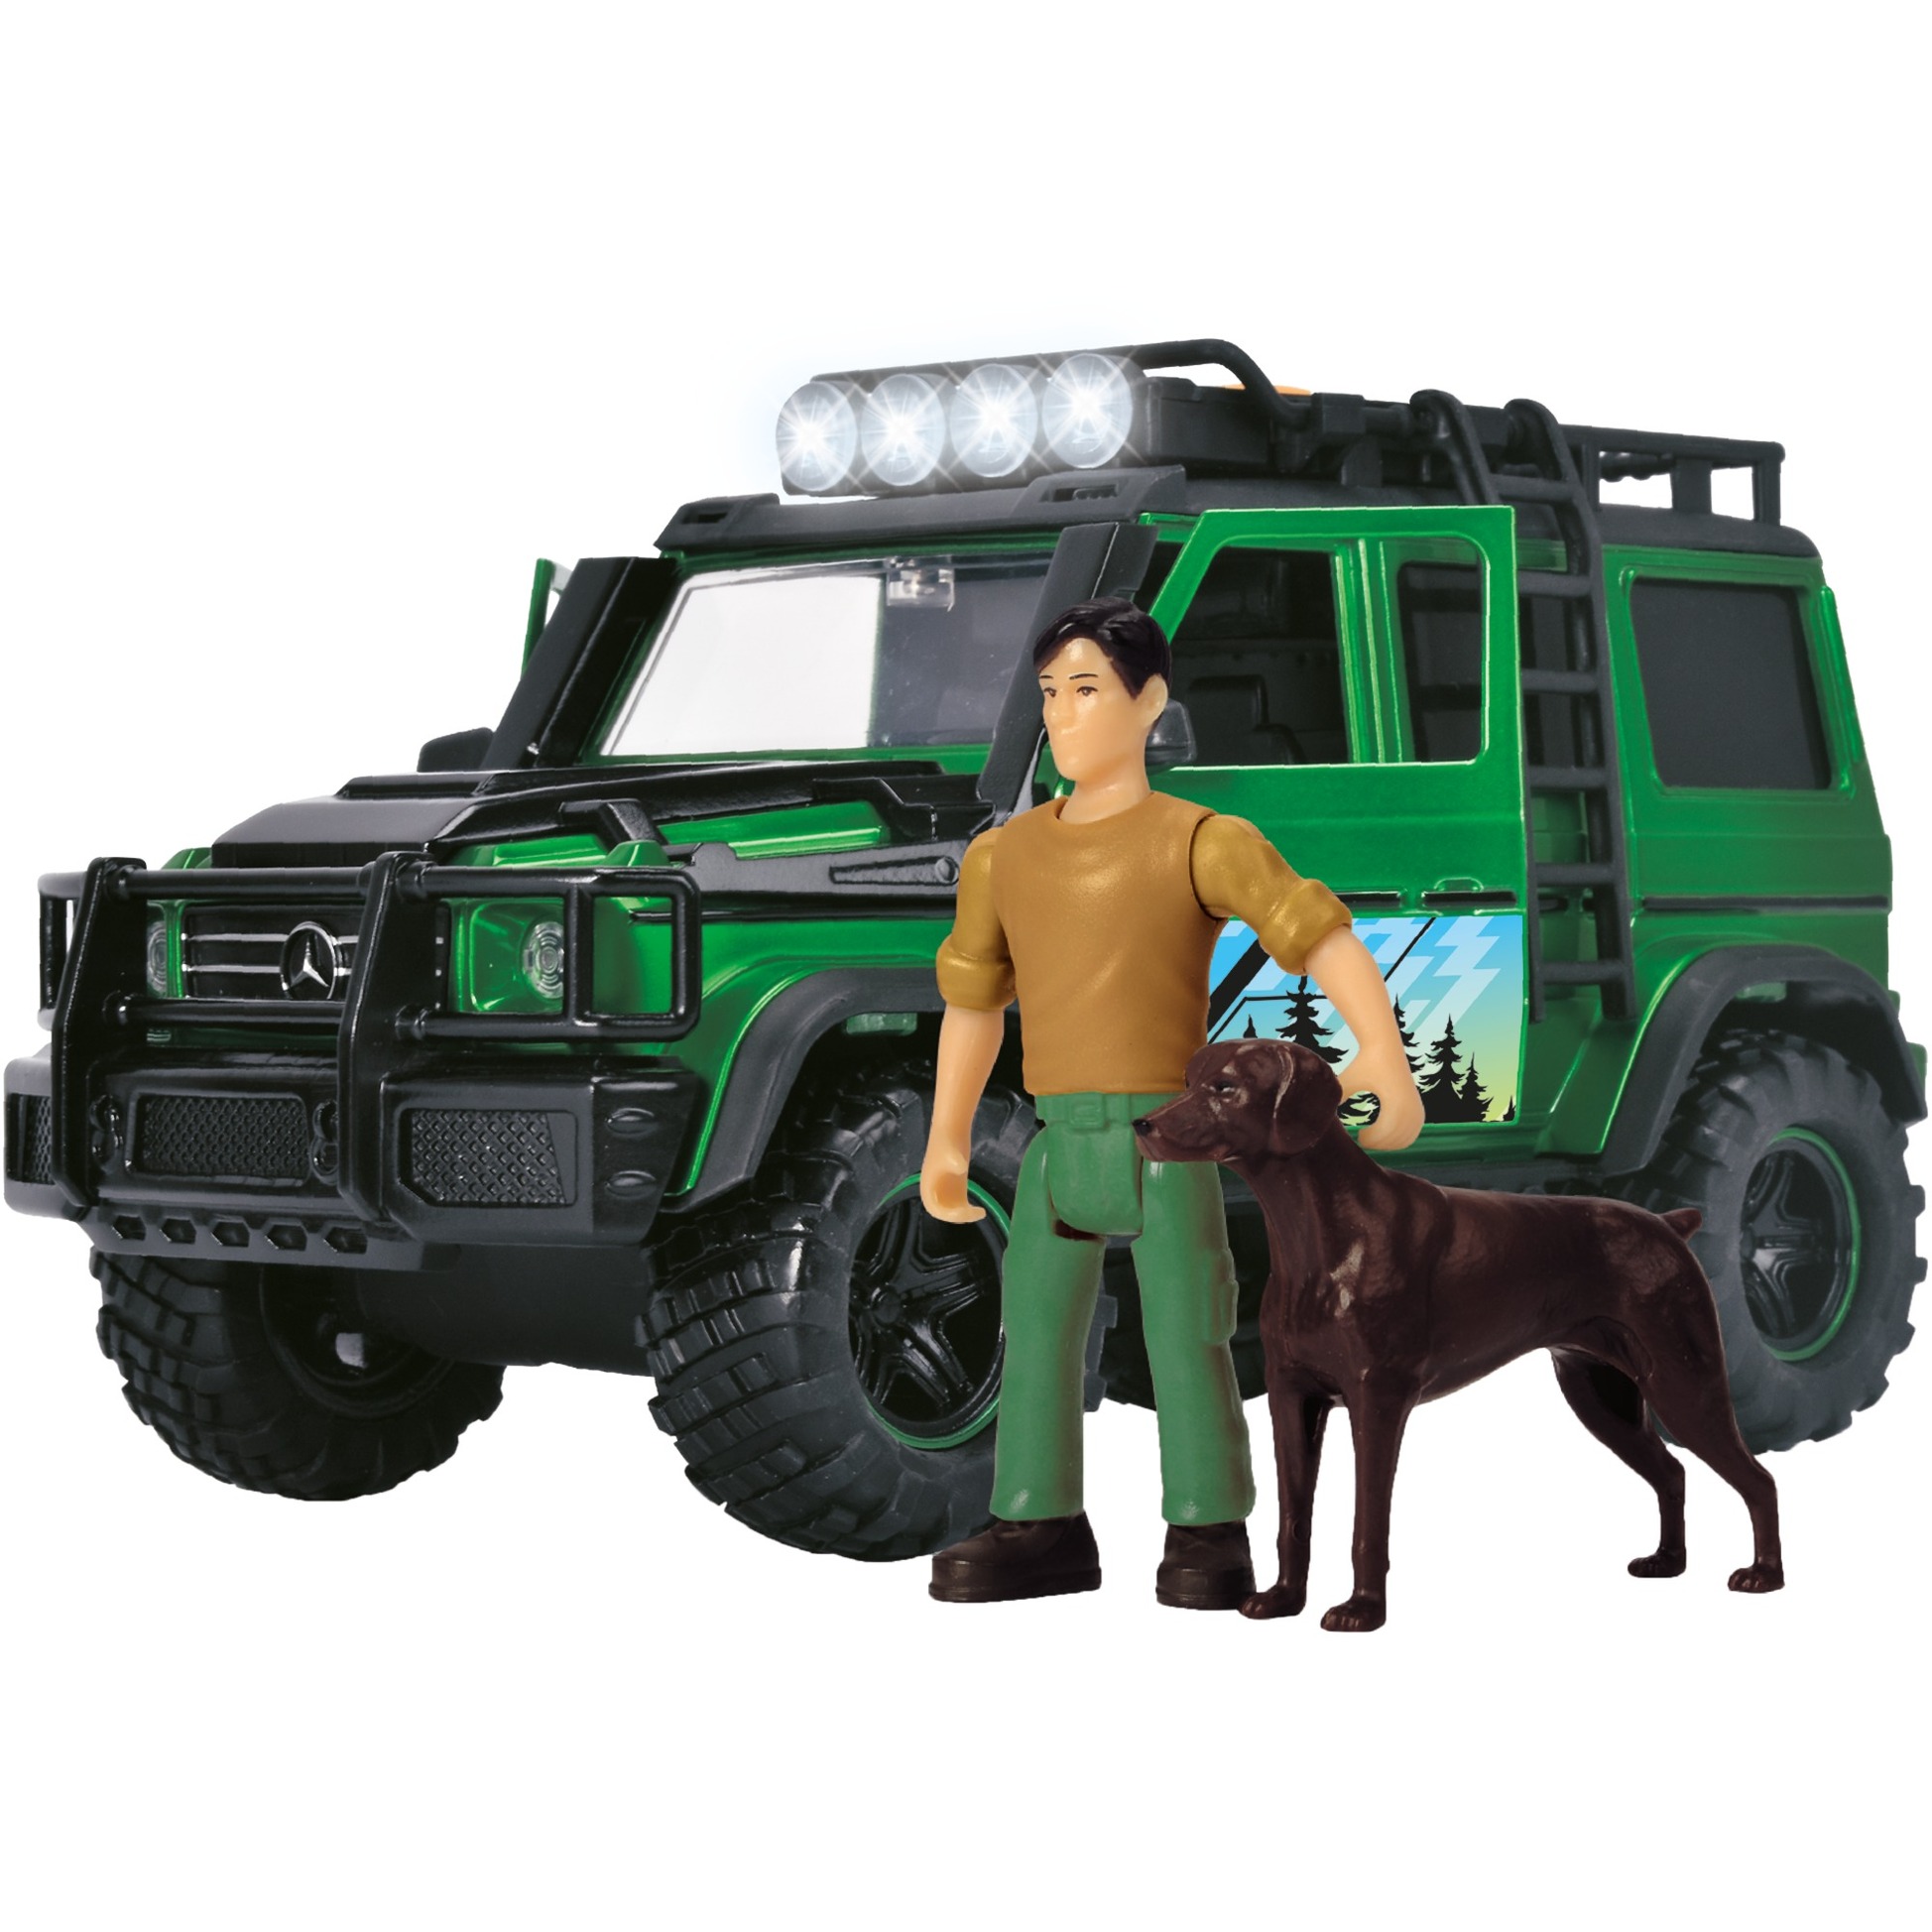 Image of Alternate - Forest Ranger, Try Me, Spielfahrzeug online einkaufen bei Alternate